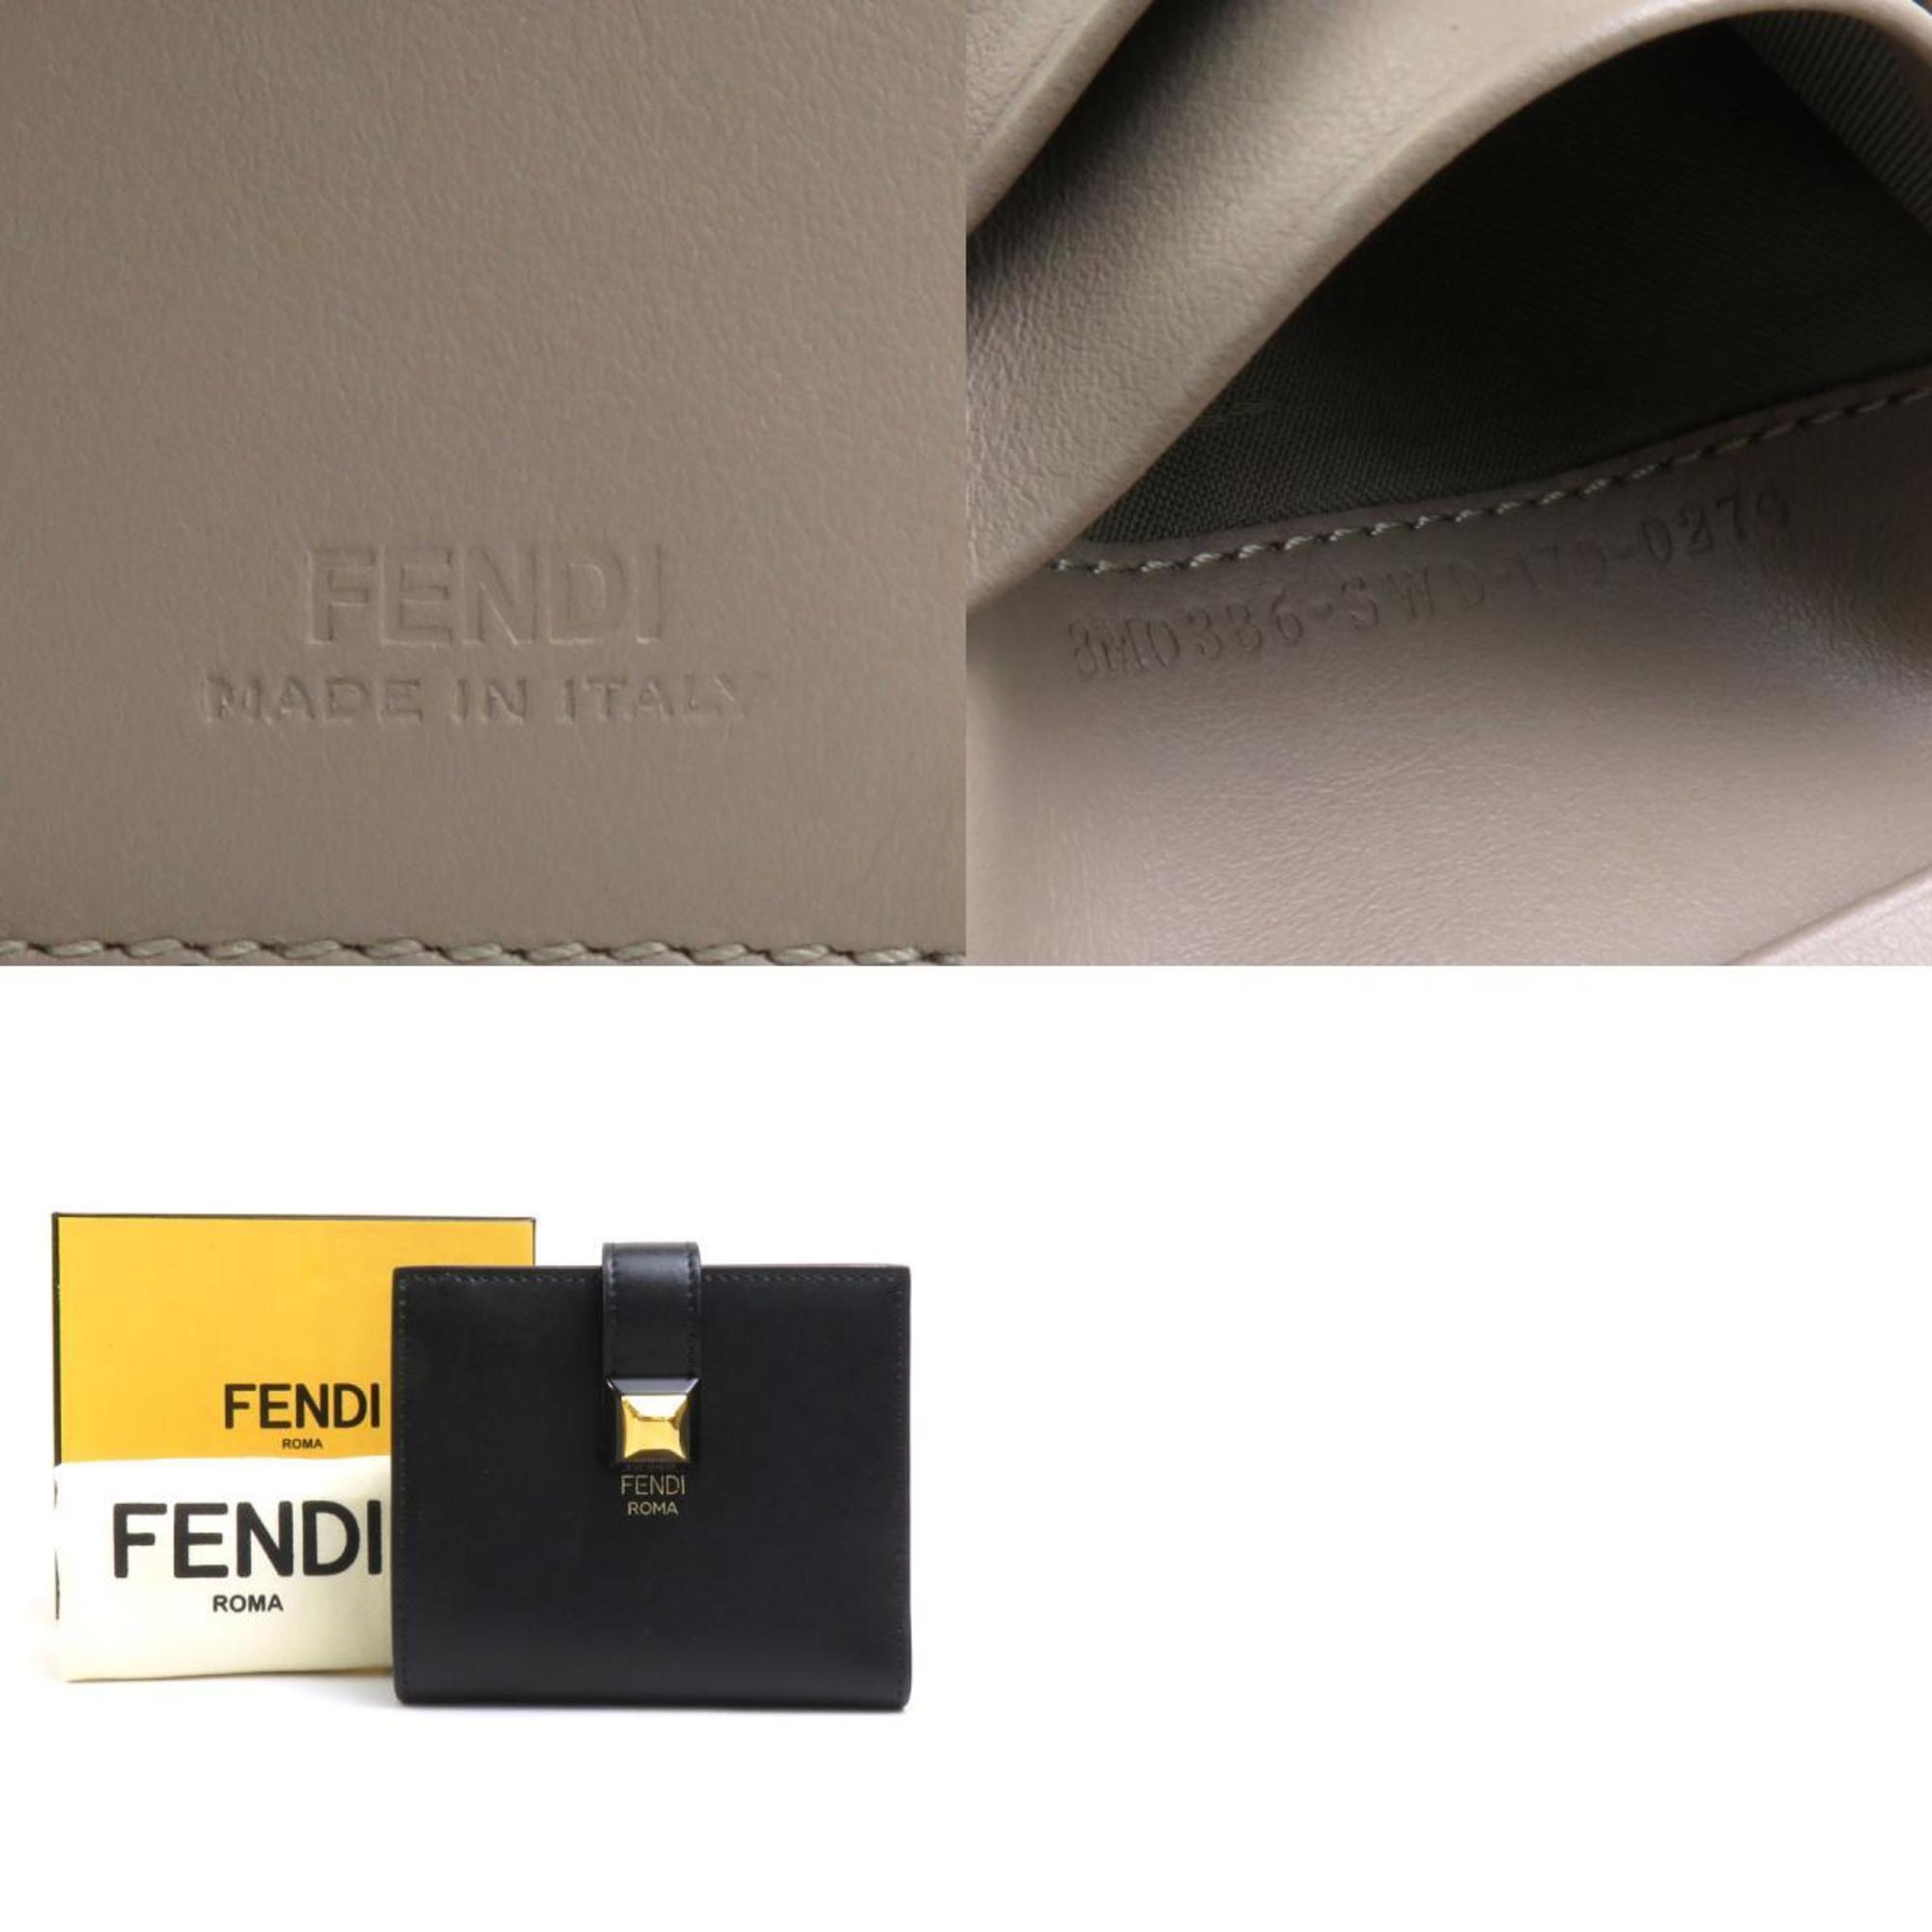 FENDI Bi-fold wallet Leather Black Gold Women's e58529a